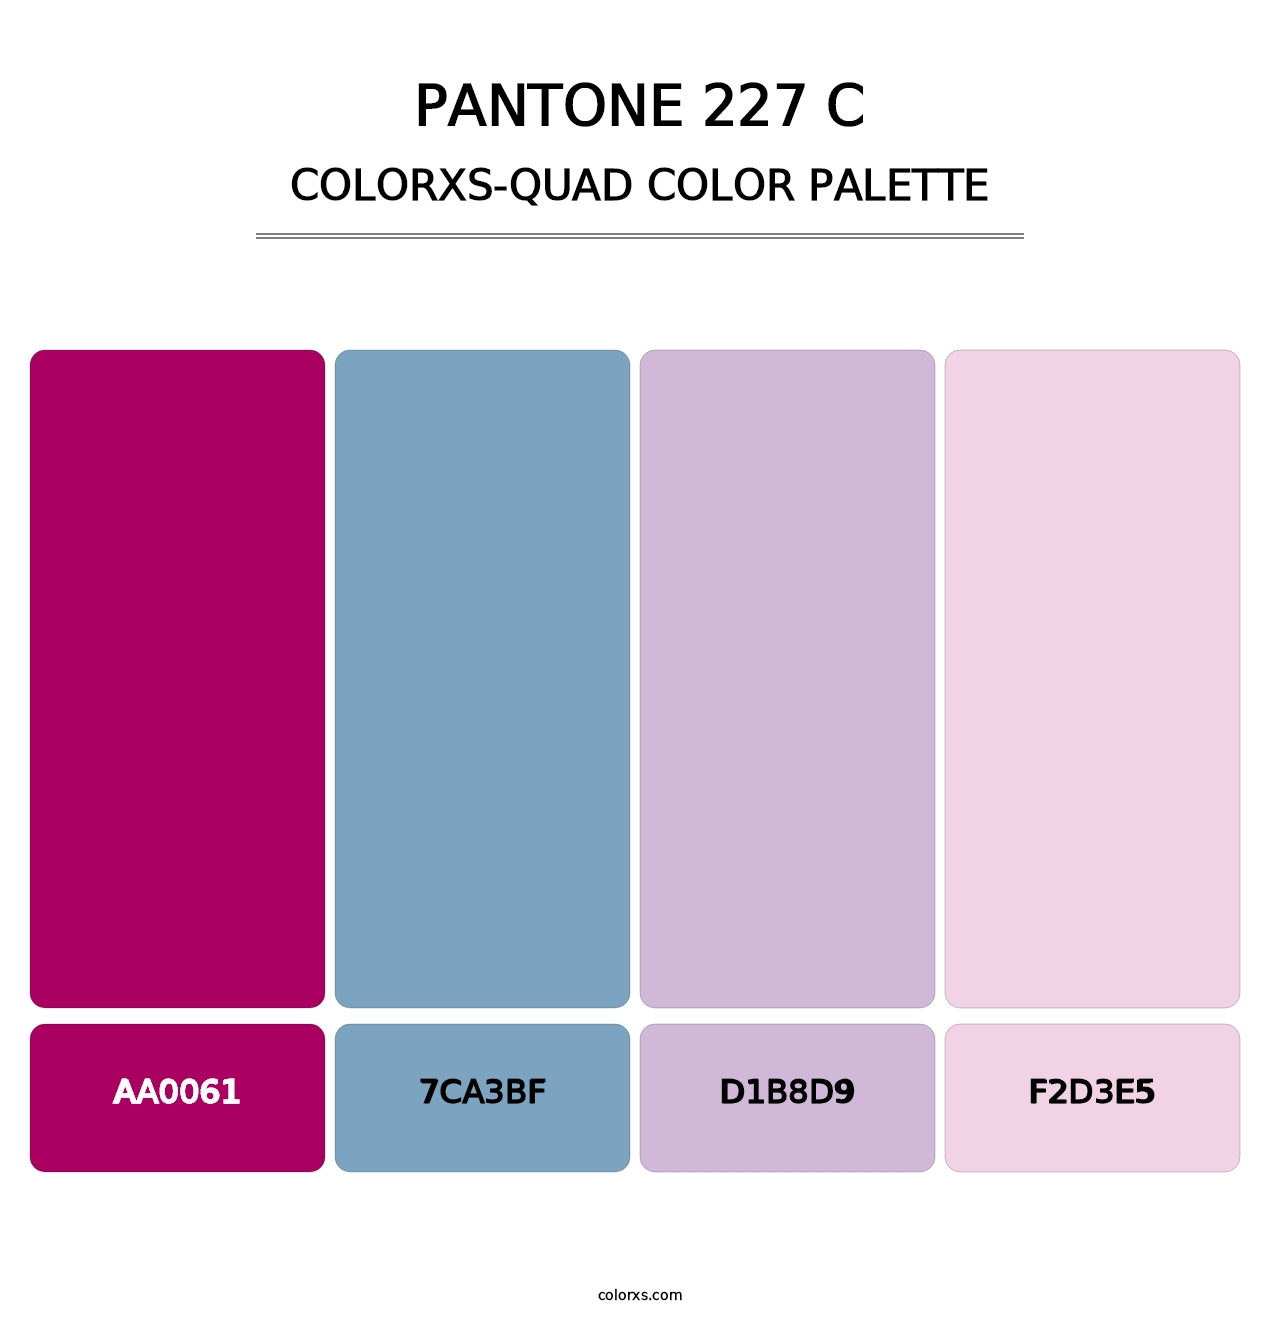 PANTONE 227 C - Colorxs Quad Palette